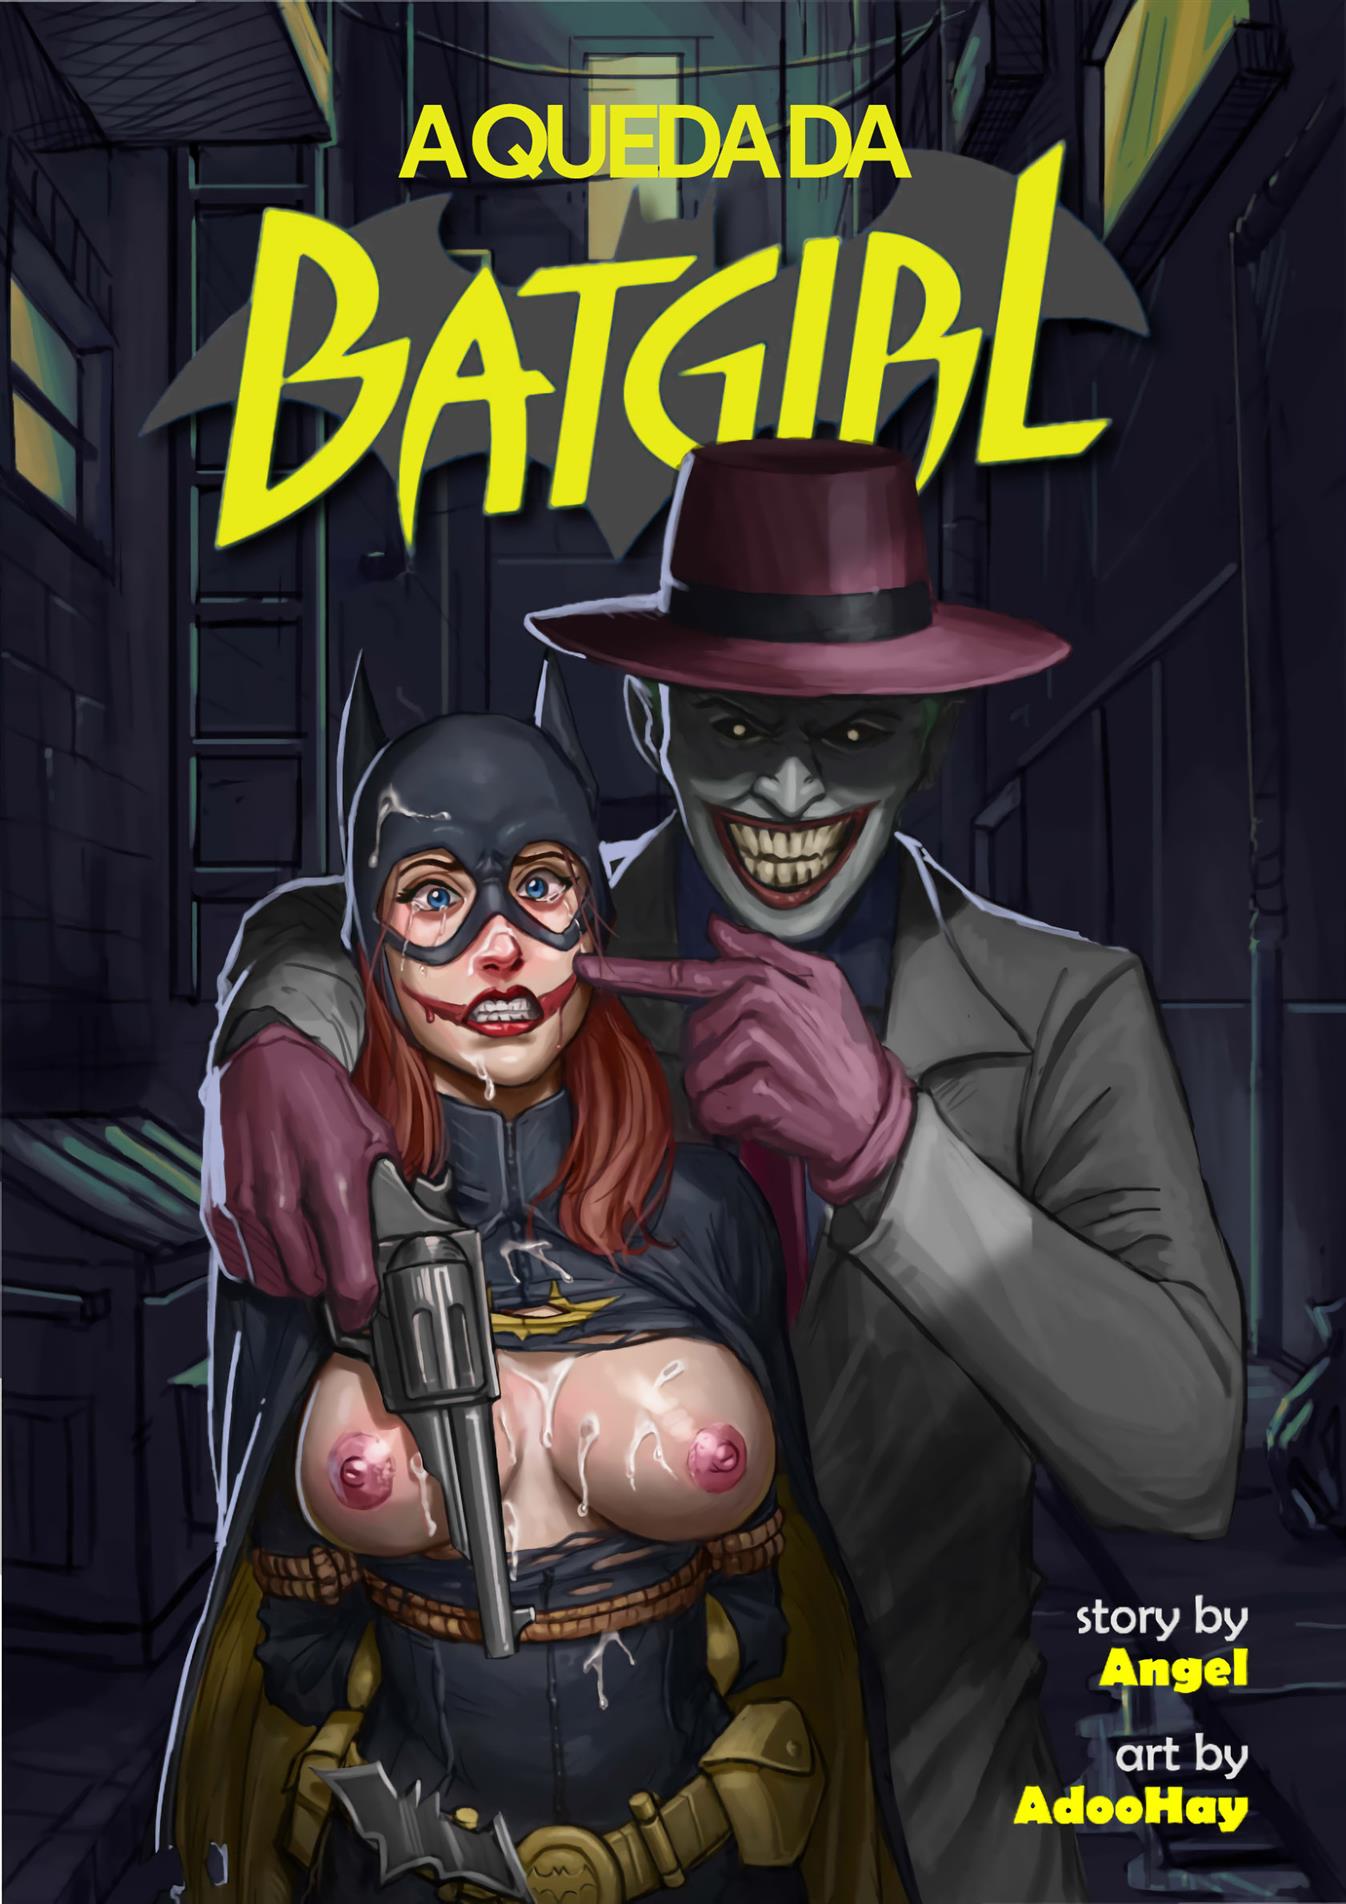 Batgirl - Capturada por terríveis e pervertidos vilões